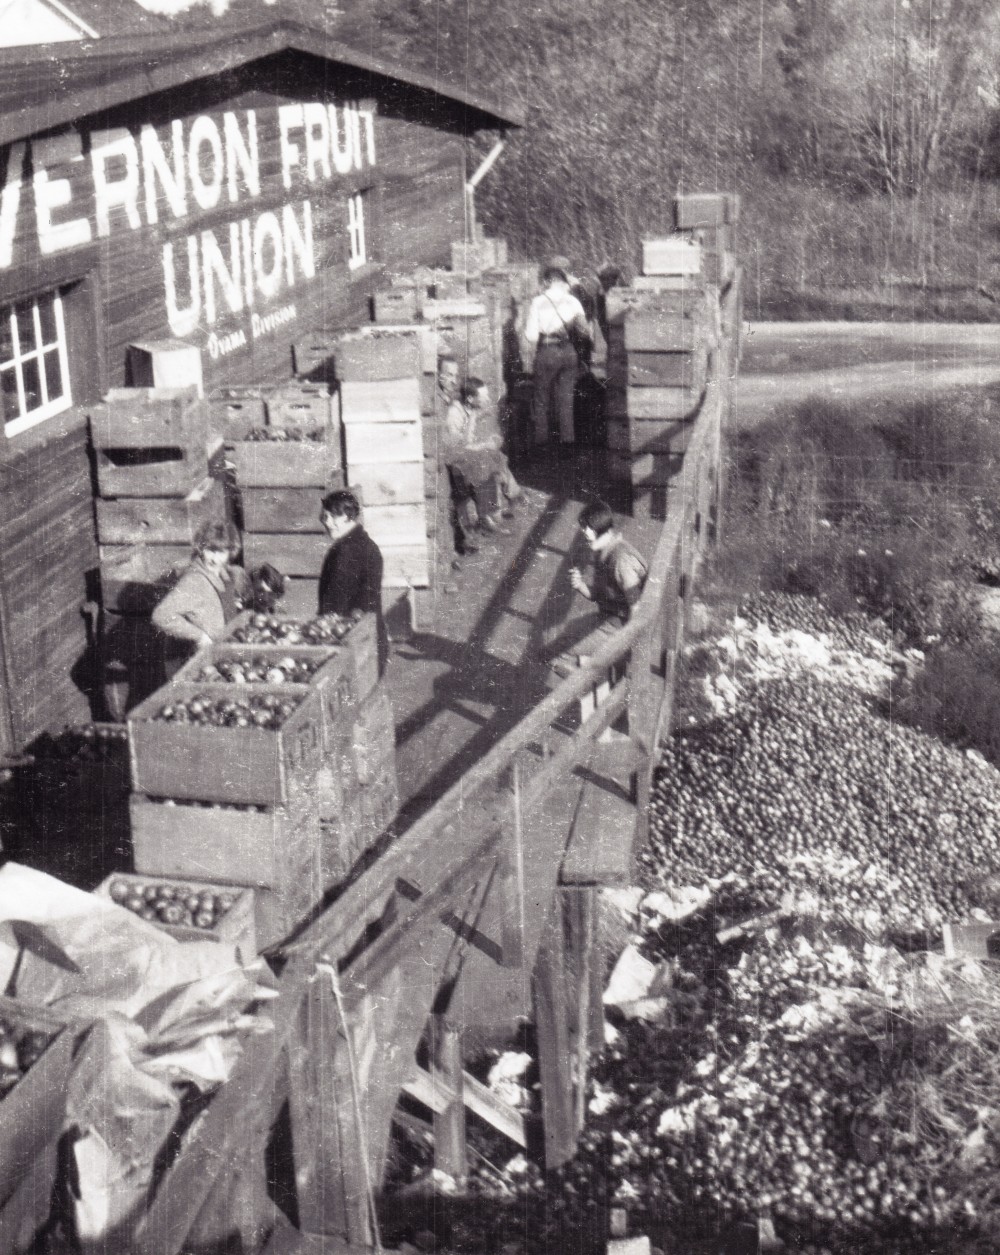 Photo en noir et blanc d’un édifice de bois sur le côté duquel les mots : « Vernon Fruit Union II, Oyama Division » sont peints. Neuf hommes et femmes se tiennent sur une terrasse surélevée au milieu de nombreuses caisses de pommes. Sous la terrasse, des milliers de pommes sont empilées à terre.